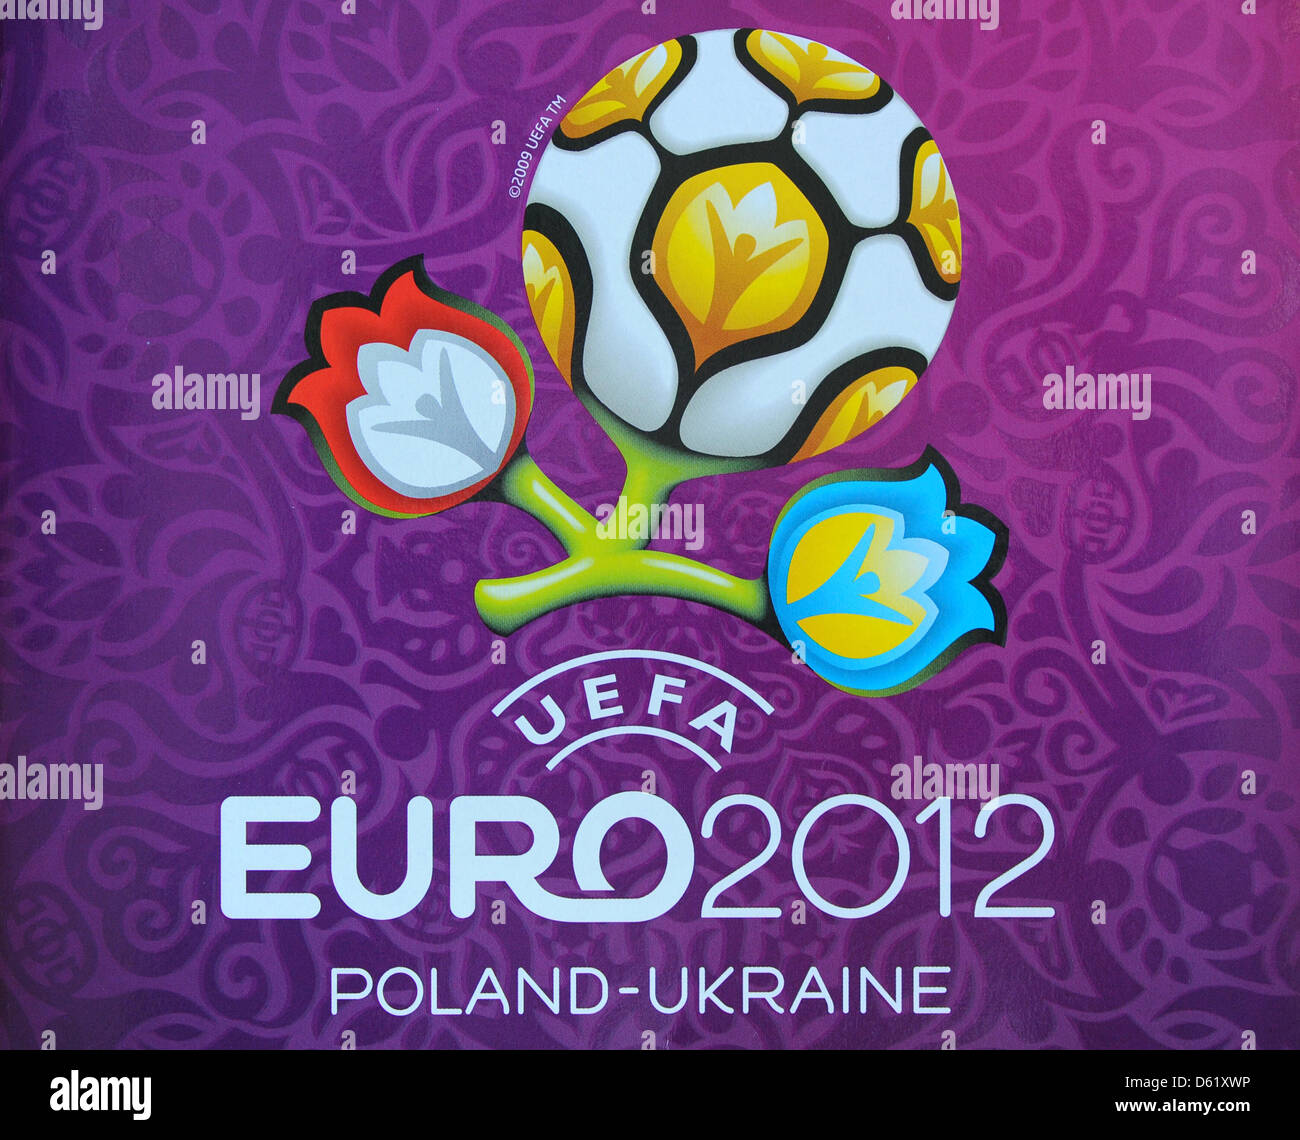 Le logo de l'UEFA EURO 2012 de football en Pologne et l'Ukraine est fweatureed sur l'autocollant officiel de l'album Panini à Berlin, Allemagne, 02 mai 2012. Photo : Jens Kalaene Banque D'Images